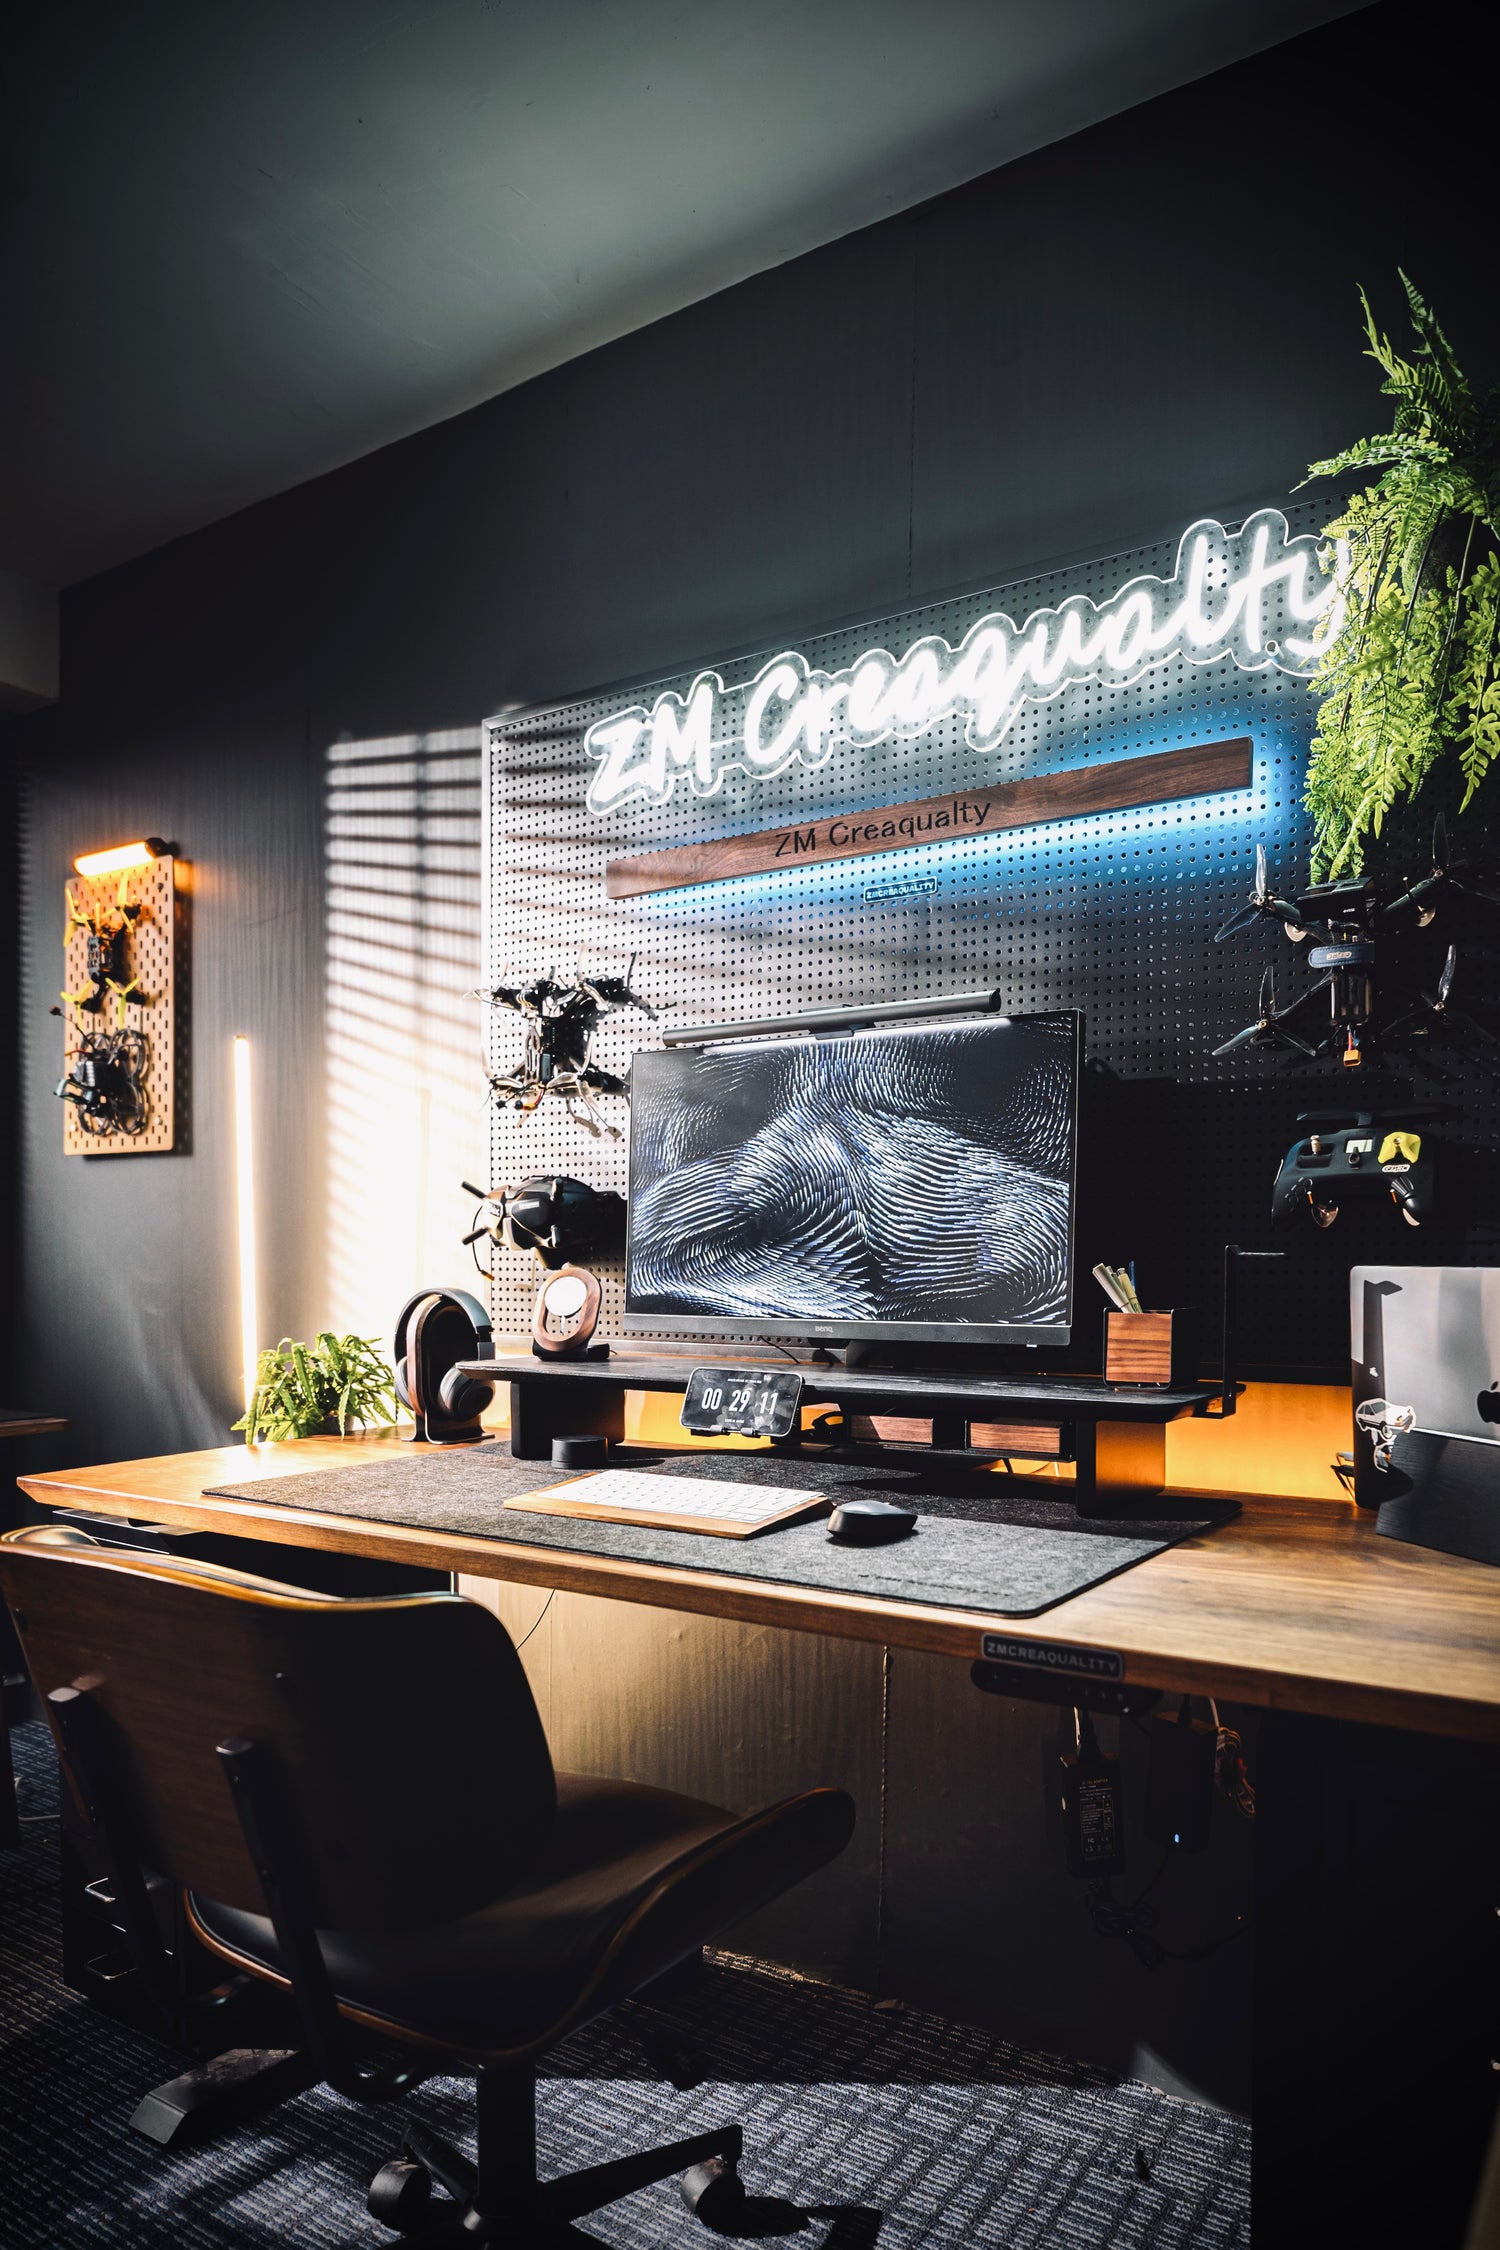 zmdesktop M20 Carbonized black solid wood desktop monitor stand riser preview 